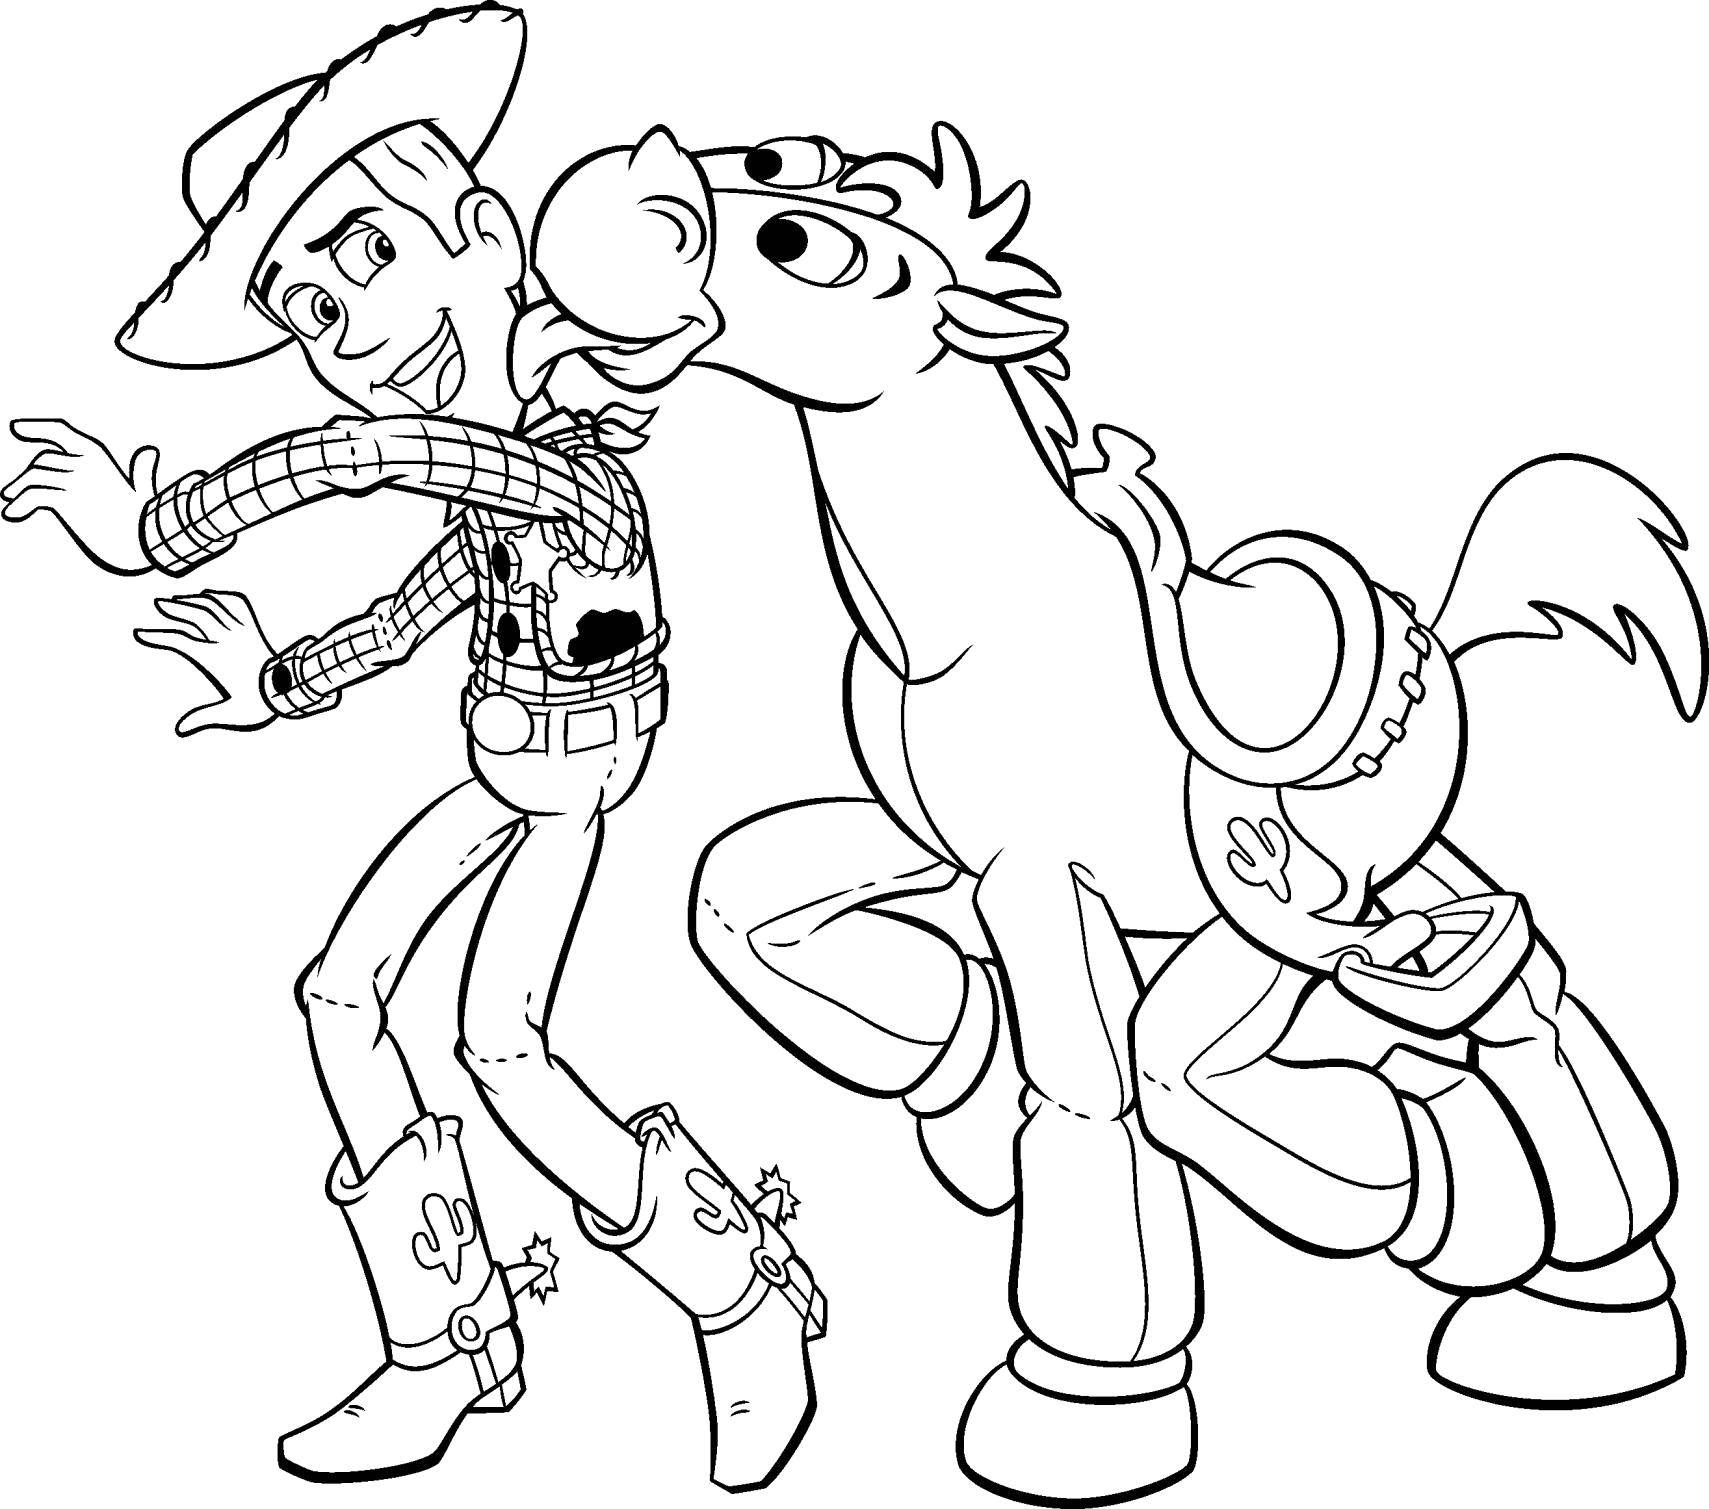 Розмальовки  Шериф вуді з конем. Завантажити розмальовку Персонаж з мультфільму, Історія іграшок .  Роздрукувати ,Діснеївські розмальовки,